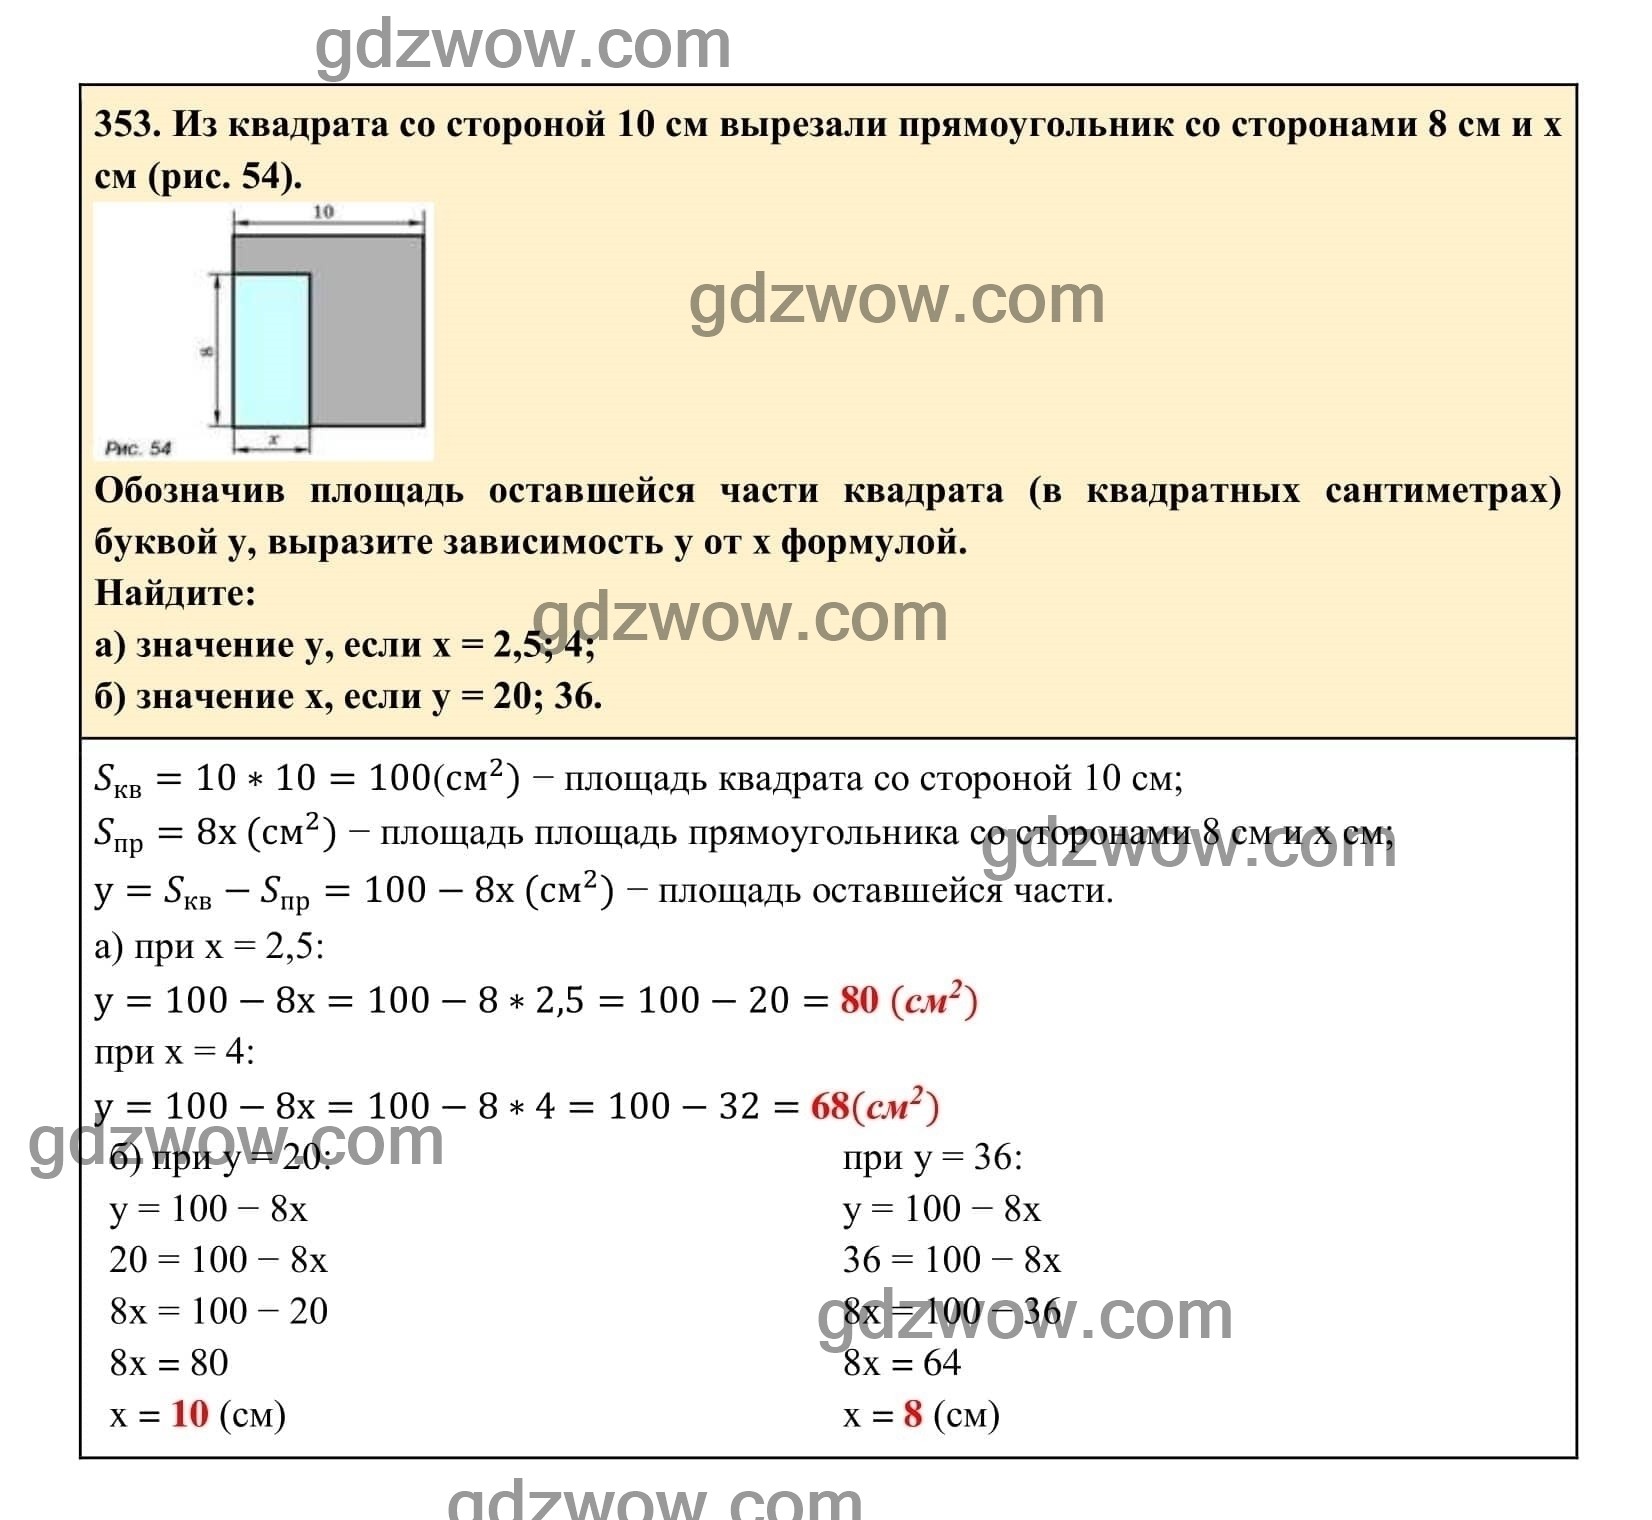 Упражнение 353 - ГДЗ по Алгебре 7 класс Учебник Макарычев (решебник) - GDZwow